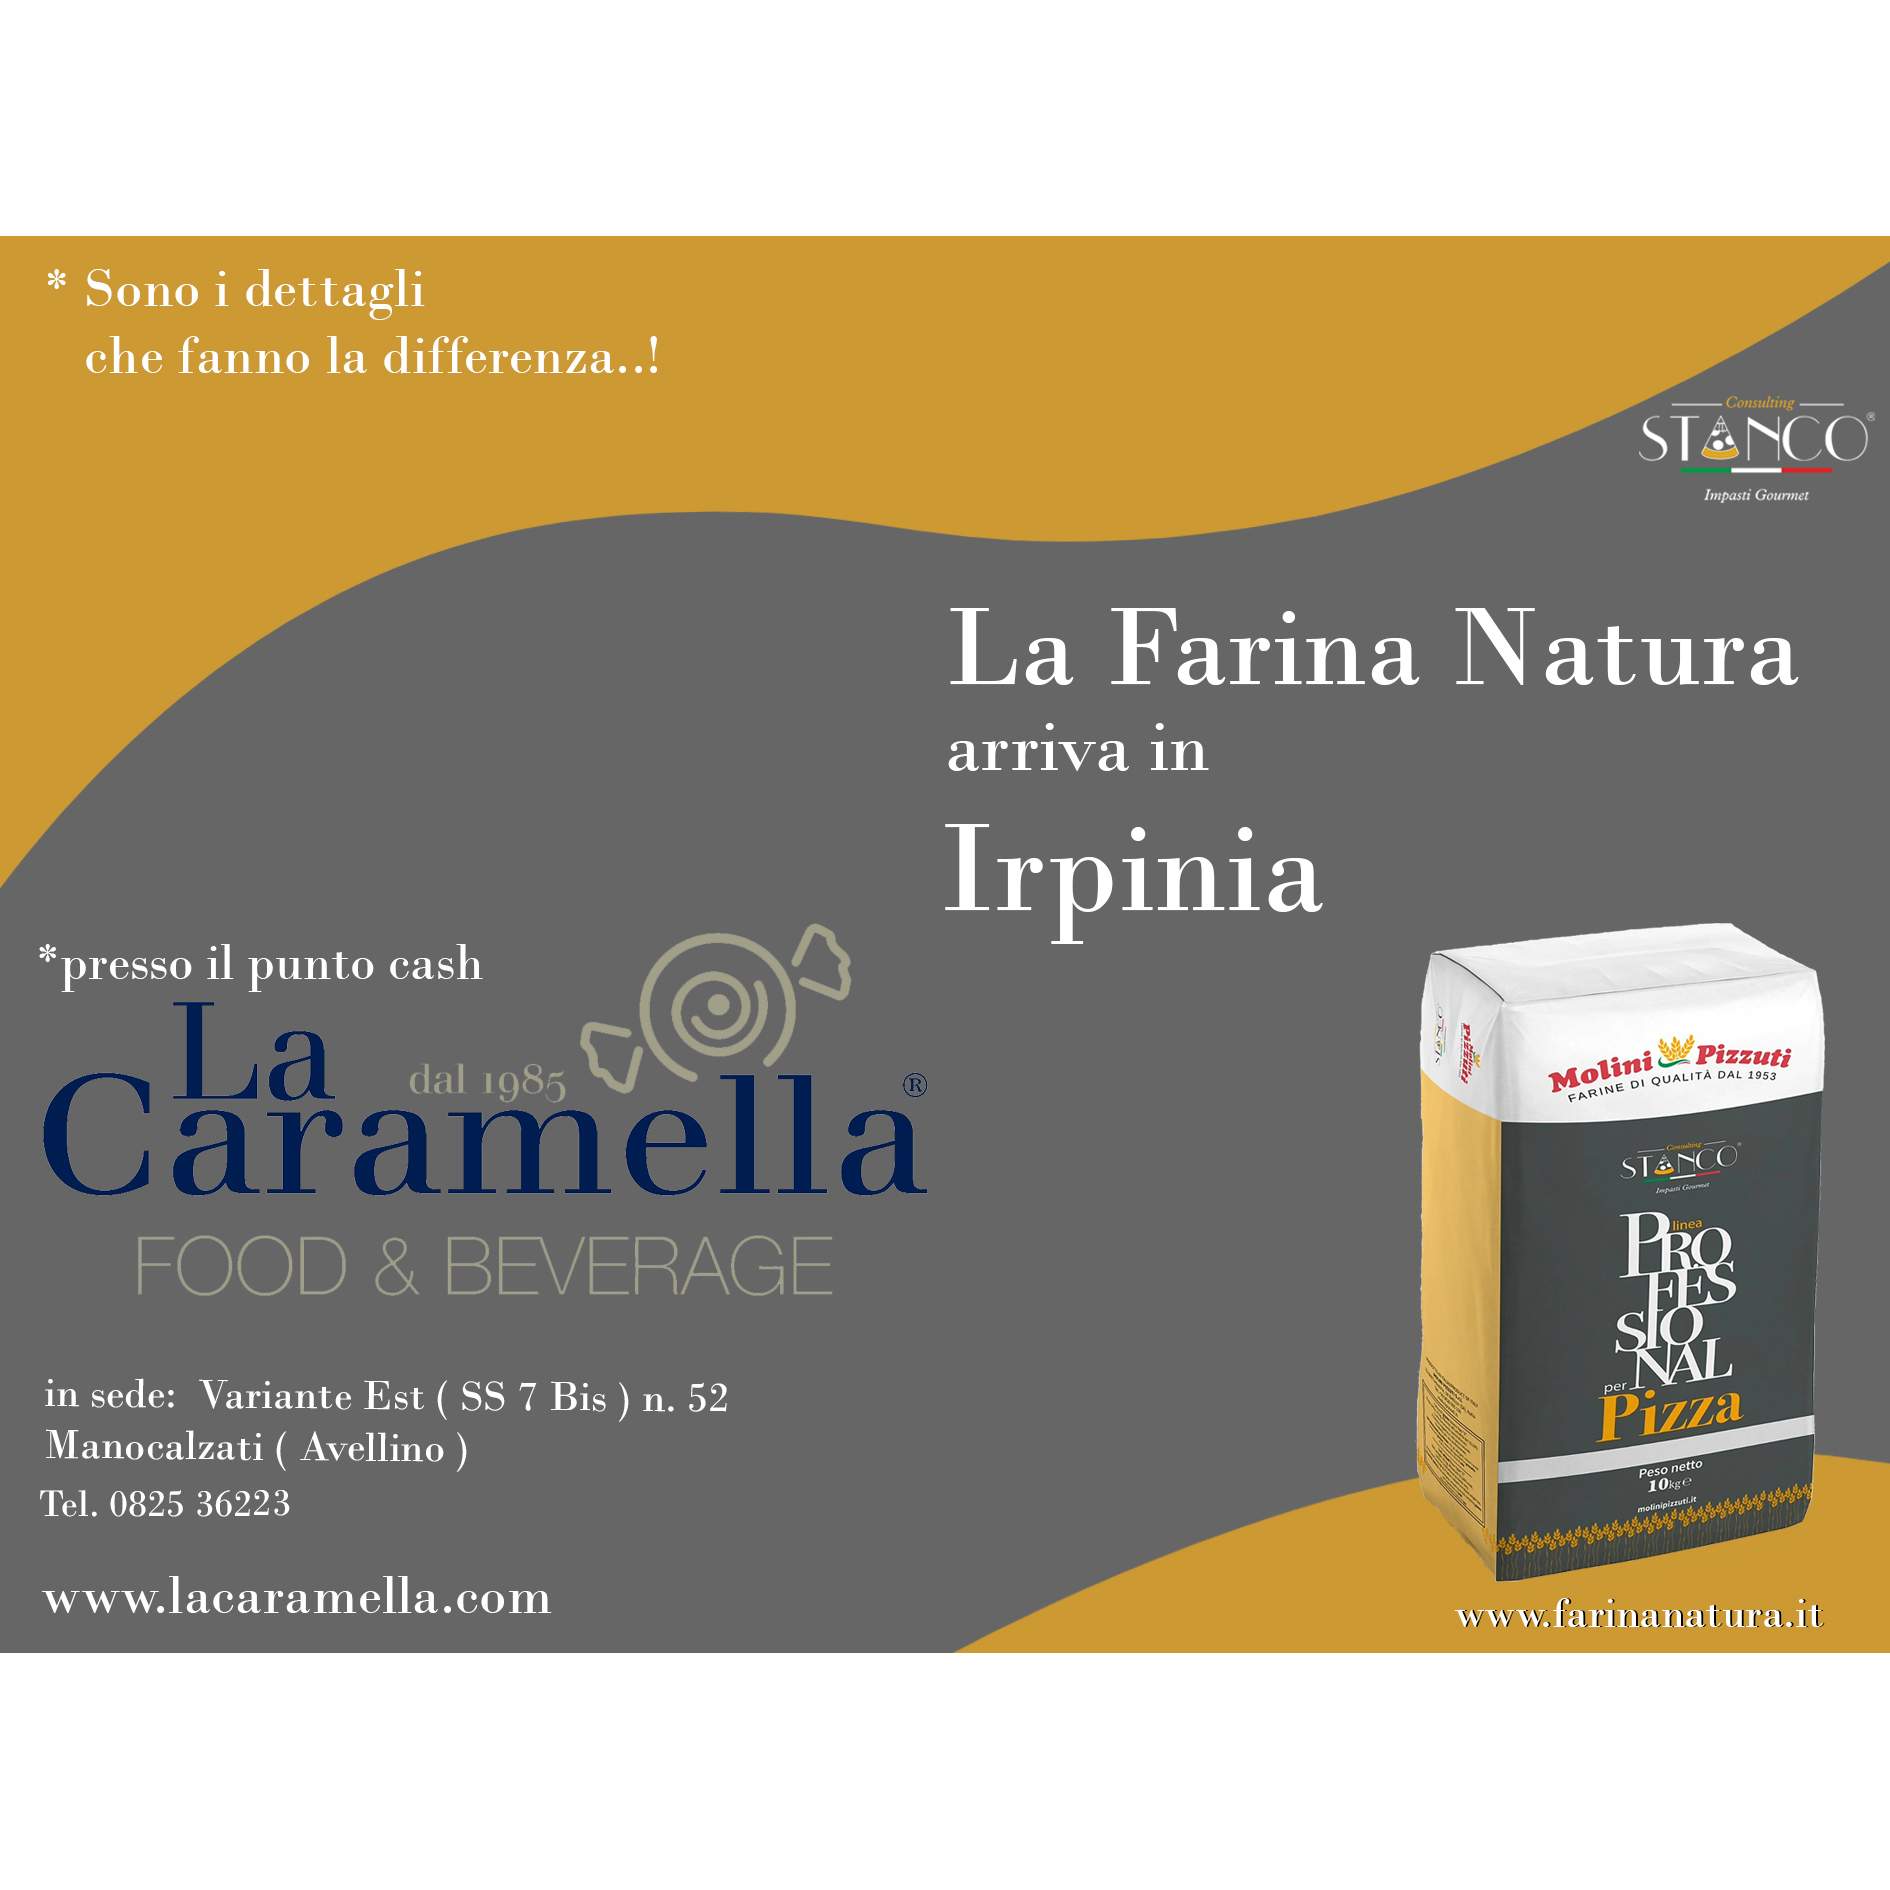 La Farina Natura arriva in Irpinia, presso il punto cash La Caramella, di Avellino, promossa dal Bayer  dott. Daniele Avigliano, esperto nel settore..!